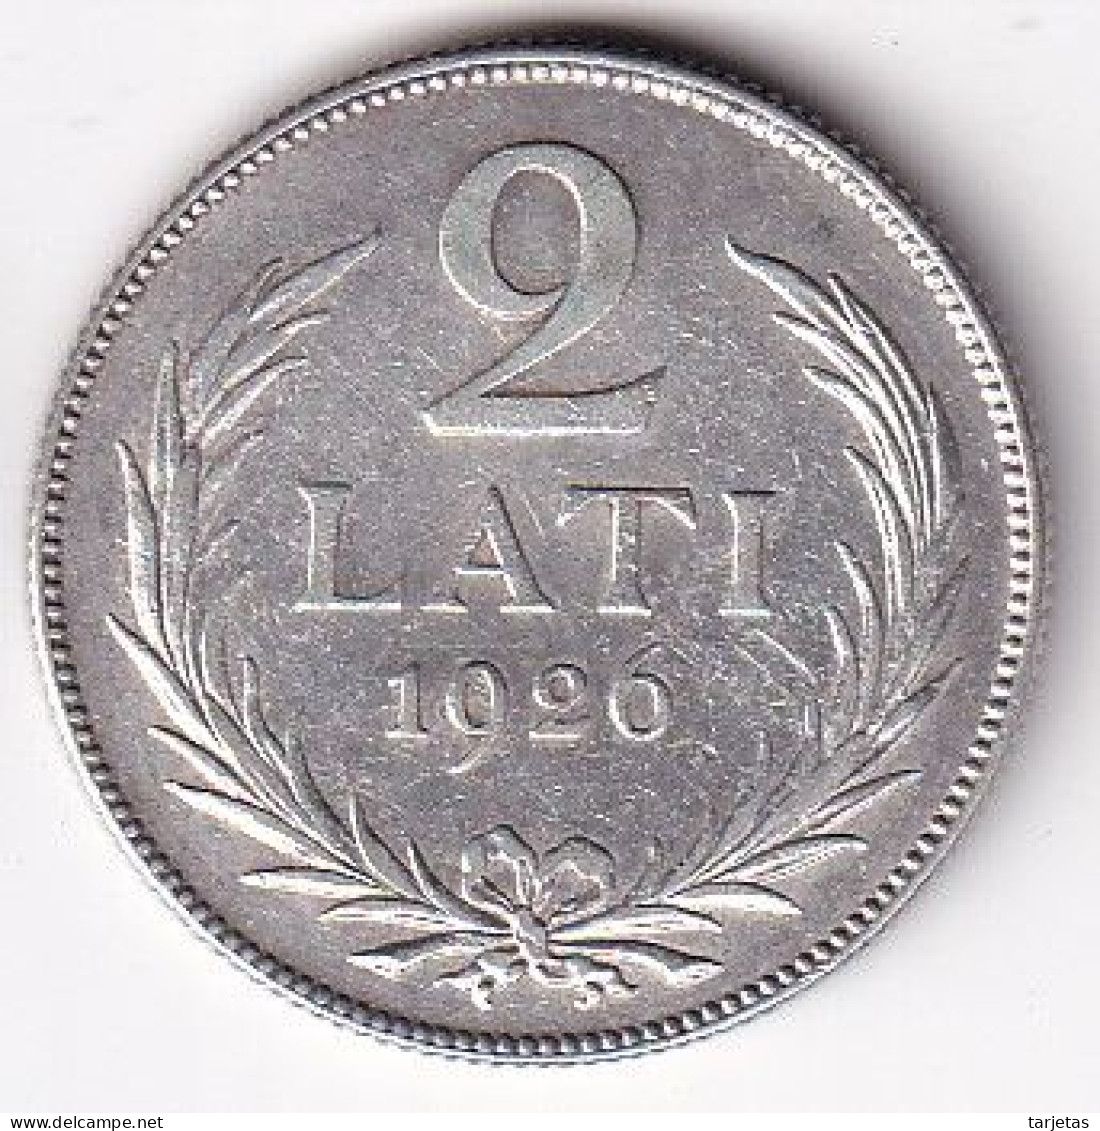 MONEDA DE PLATA DE LETONIA DE 2 LATI DEL AÑO 1926  (COIN) SILVER-ARGENT - Latvia